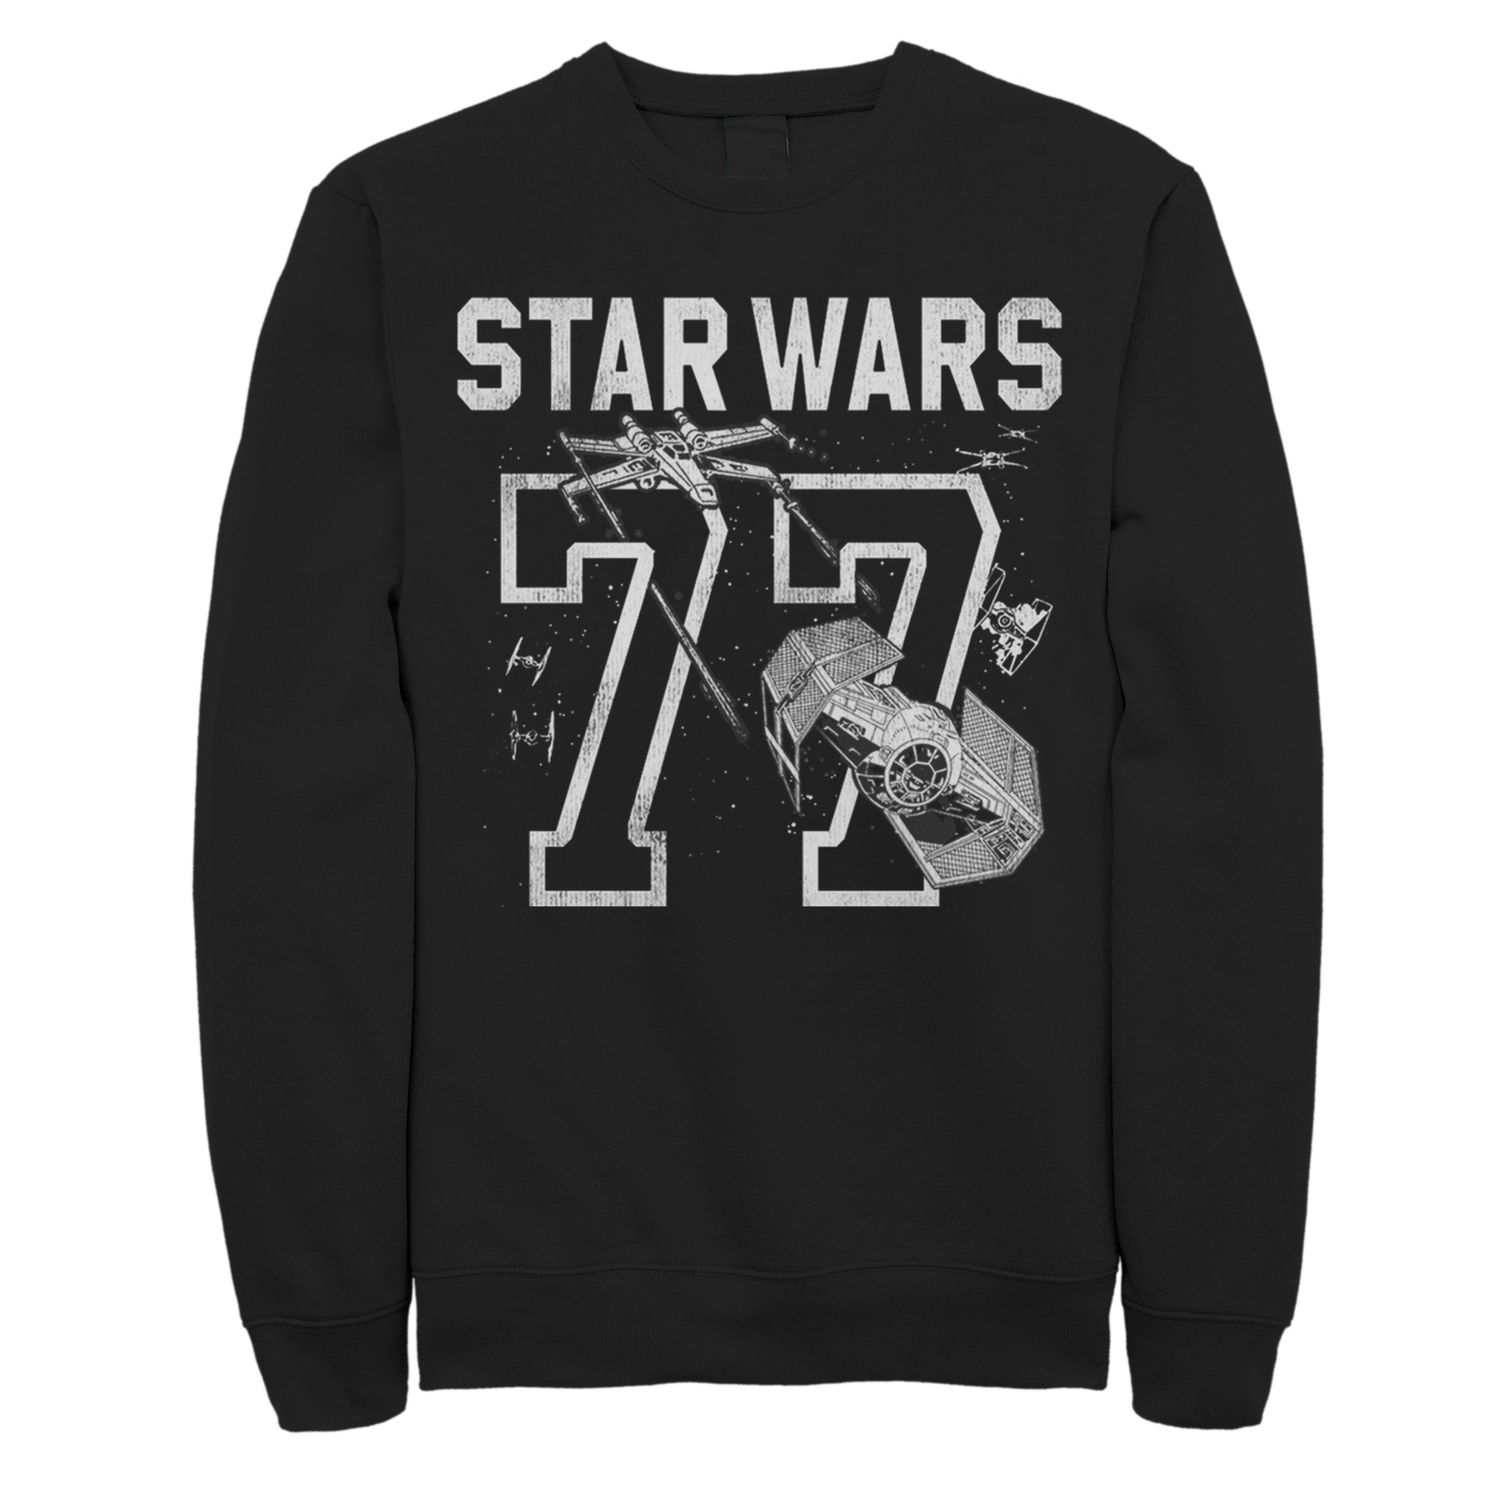 star wars 77 shirt